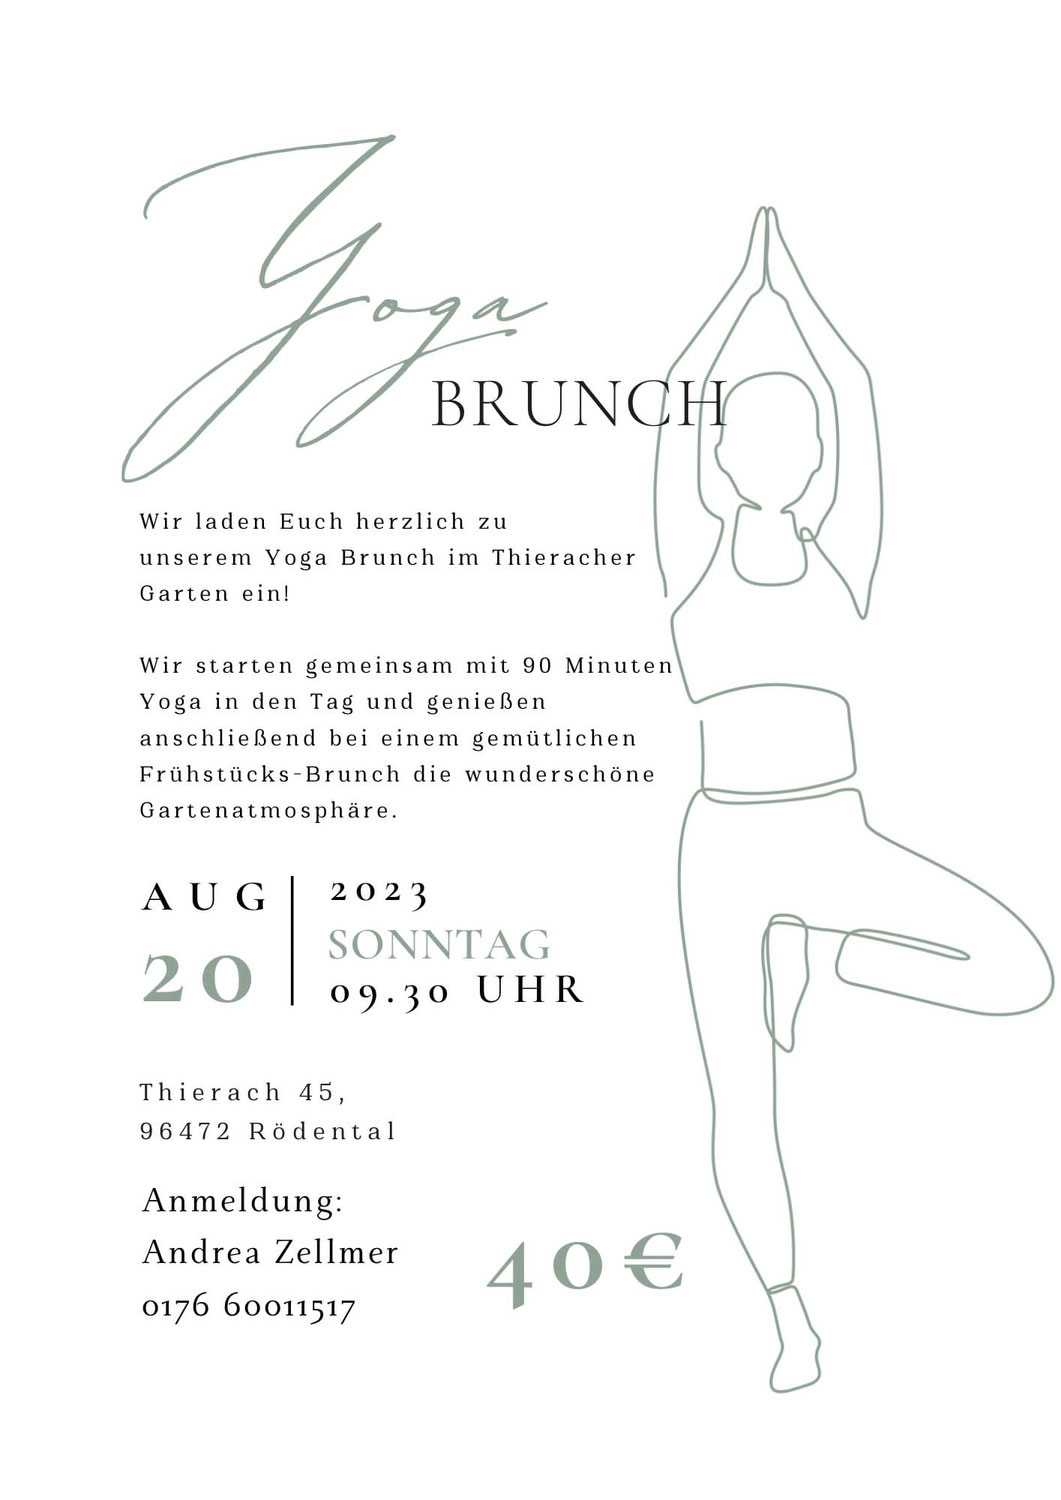 YogaBrunch im Tieracher Garten - 20.08.2023